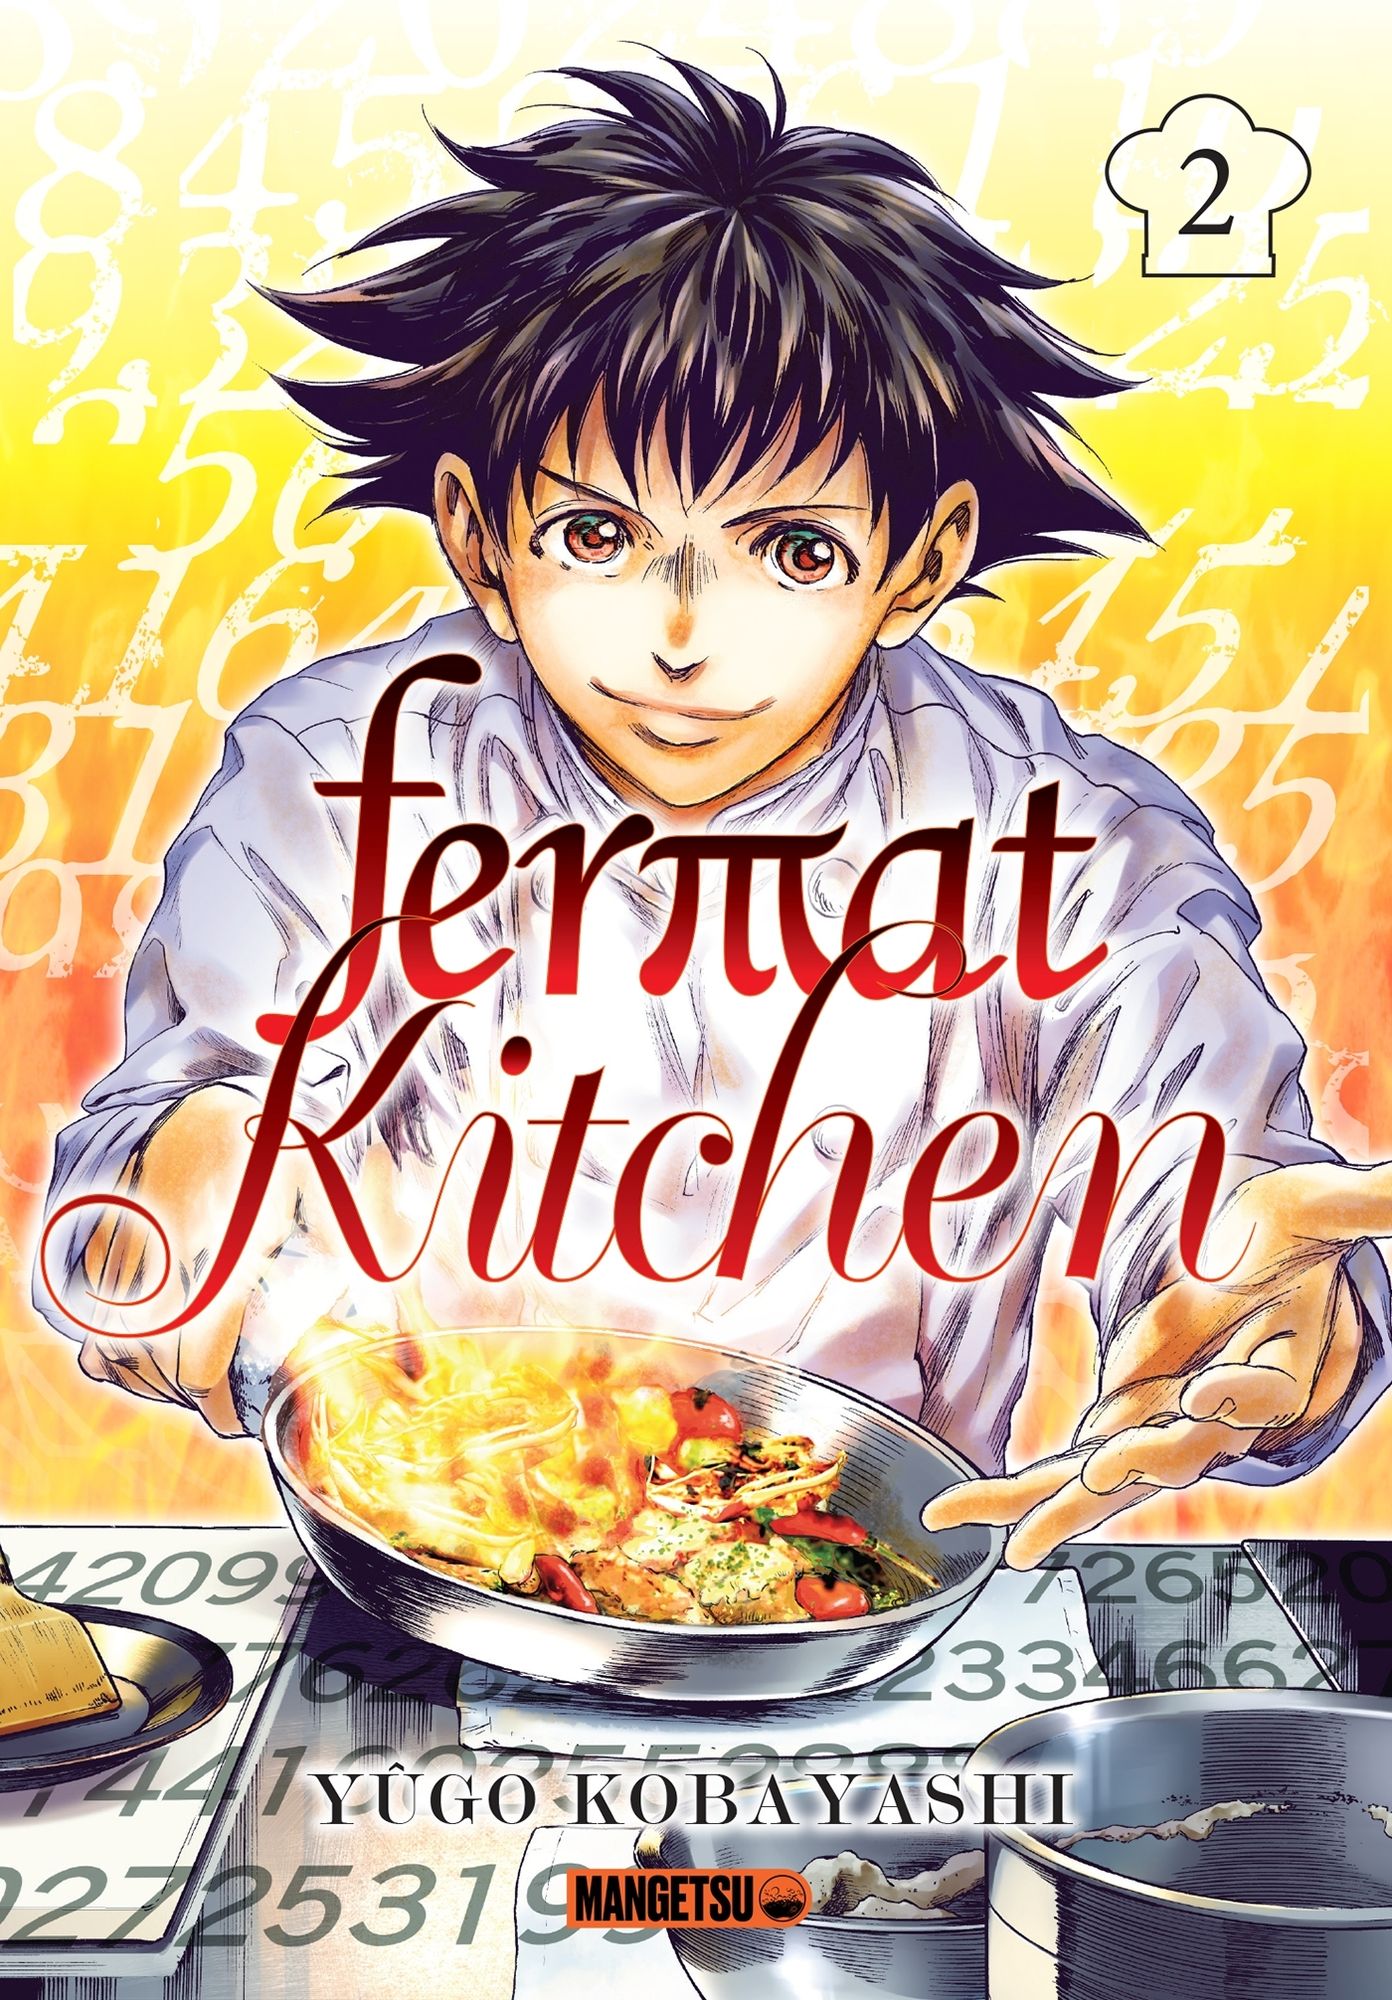 Couverture de l'album Fermat Kitchen 2